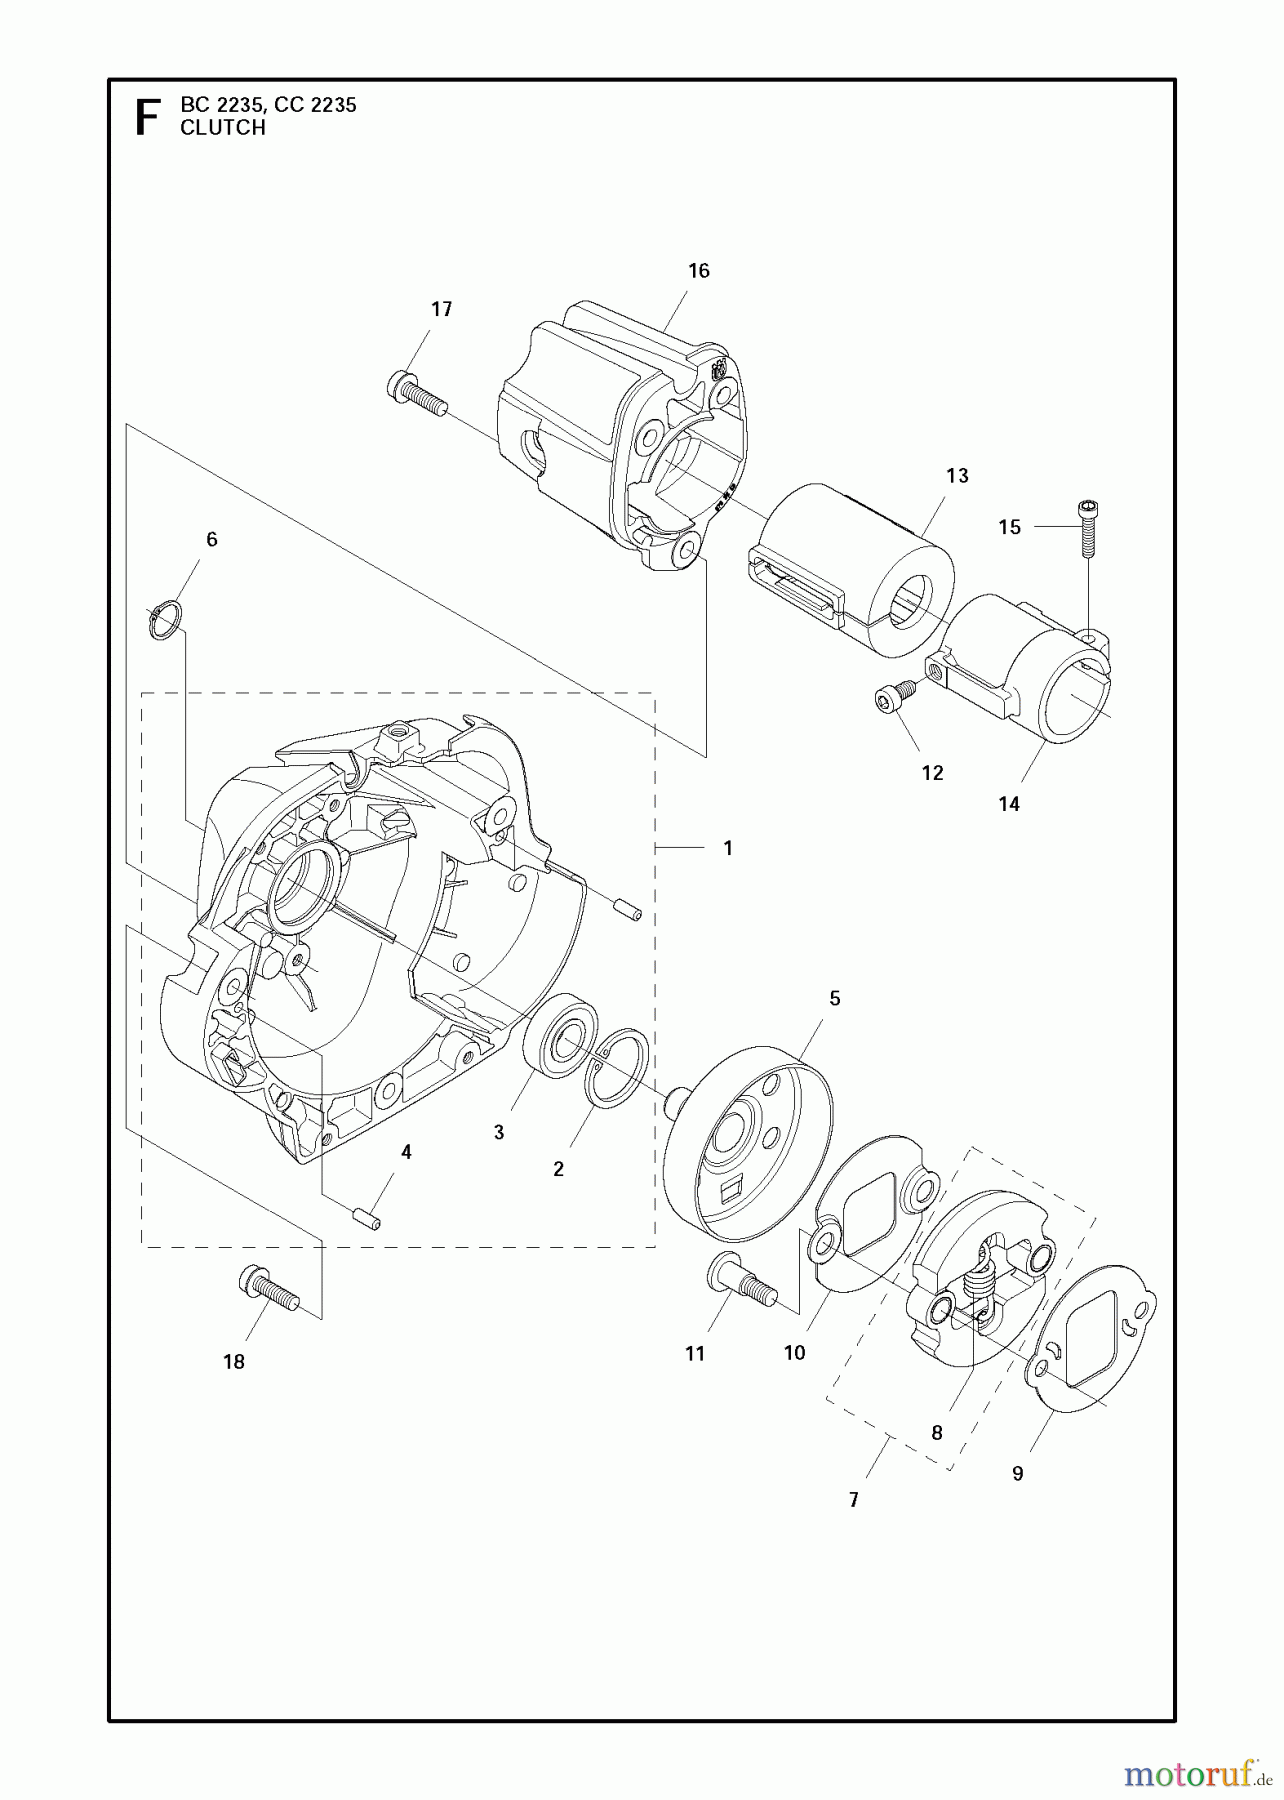  Jonsered Motorsensen, Trimmer BC2235 - Jonsered Brushcutter (2011-02) CLUTCH